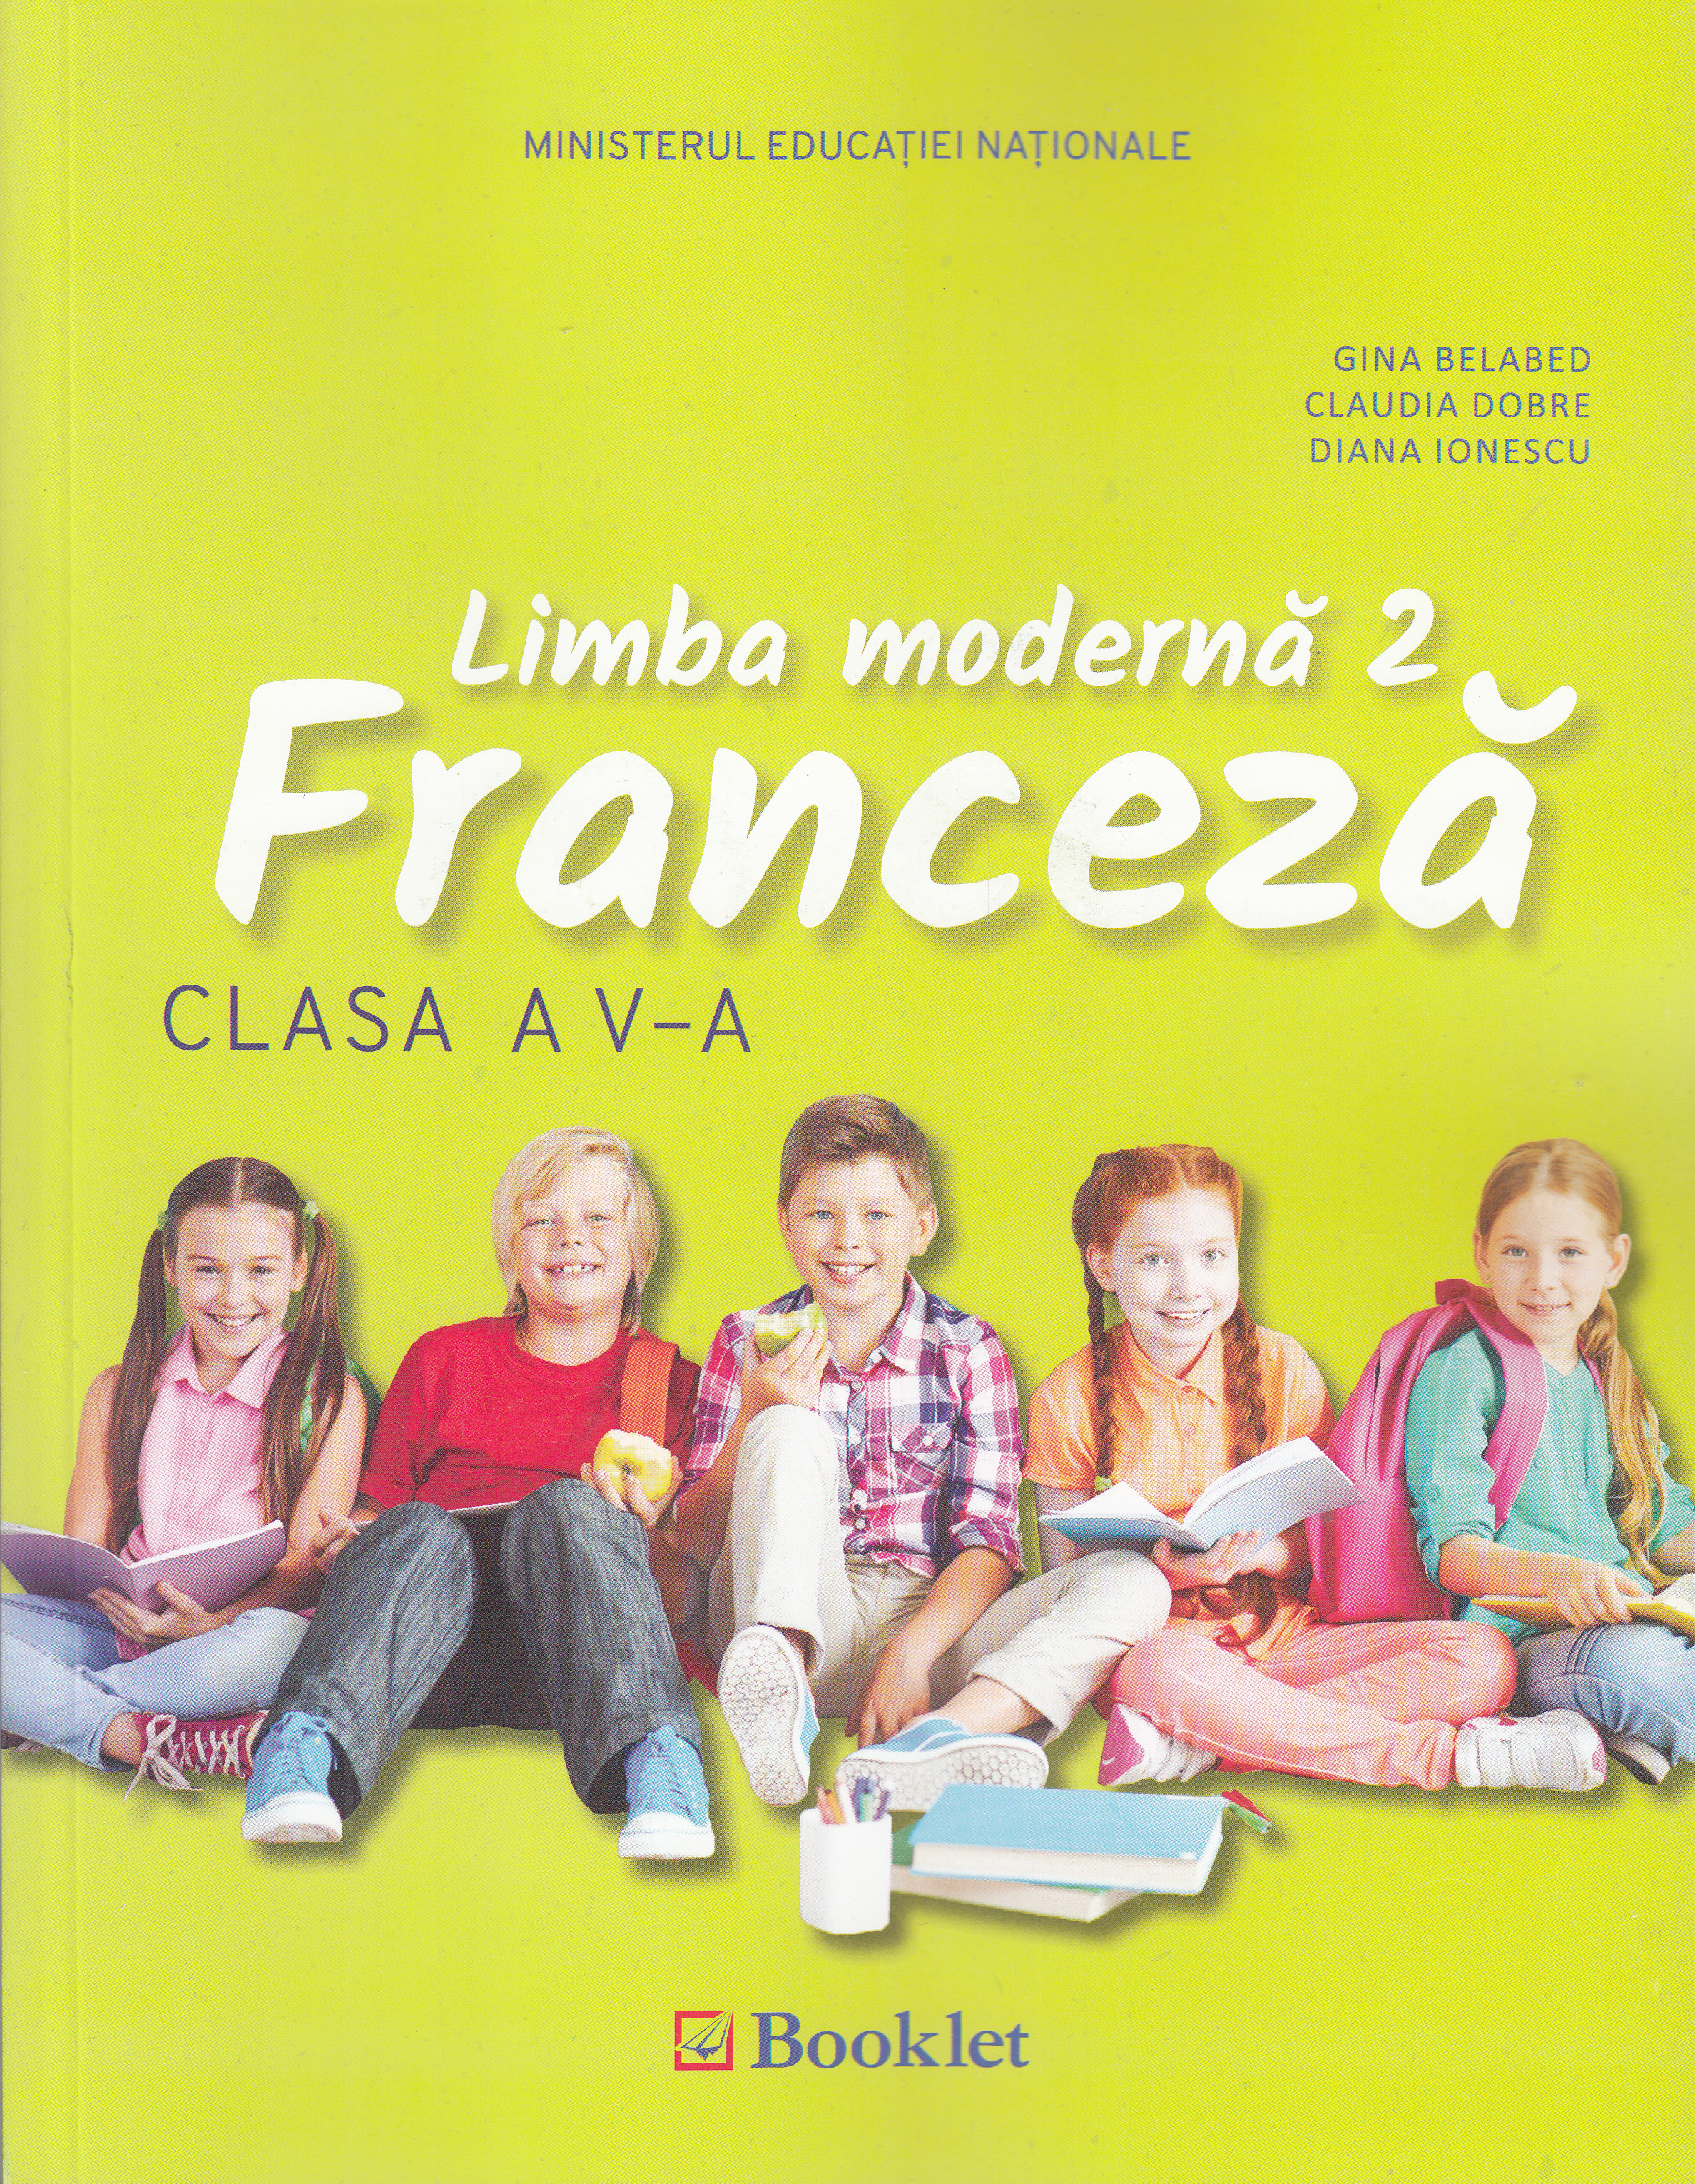 Limba moderna 2. Franceza - Clasa 5 - Manual + CD - Gina Belabed, Claudia Dobre